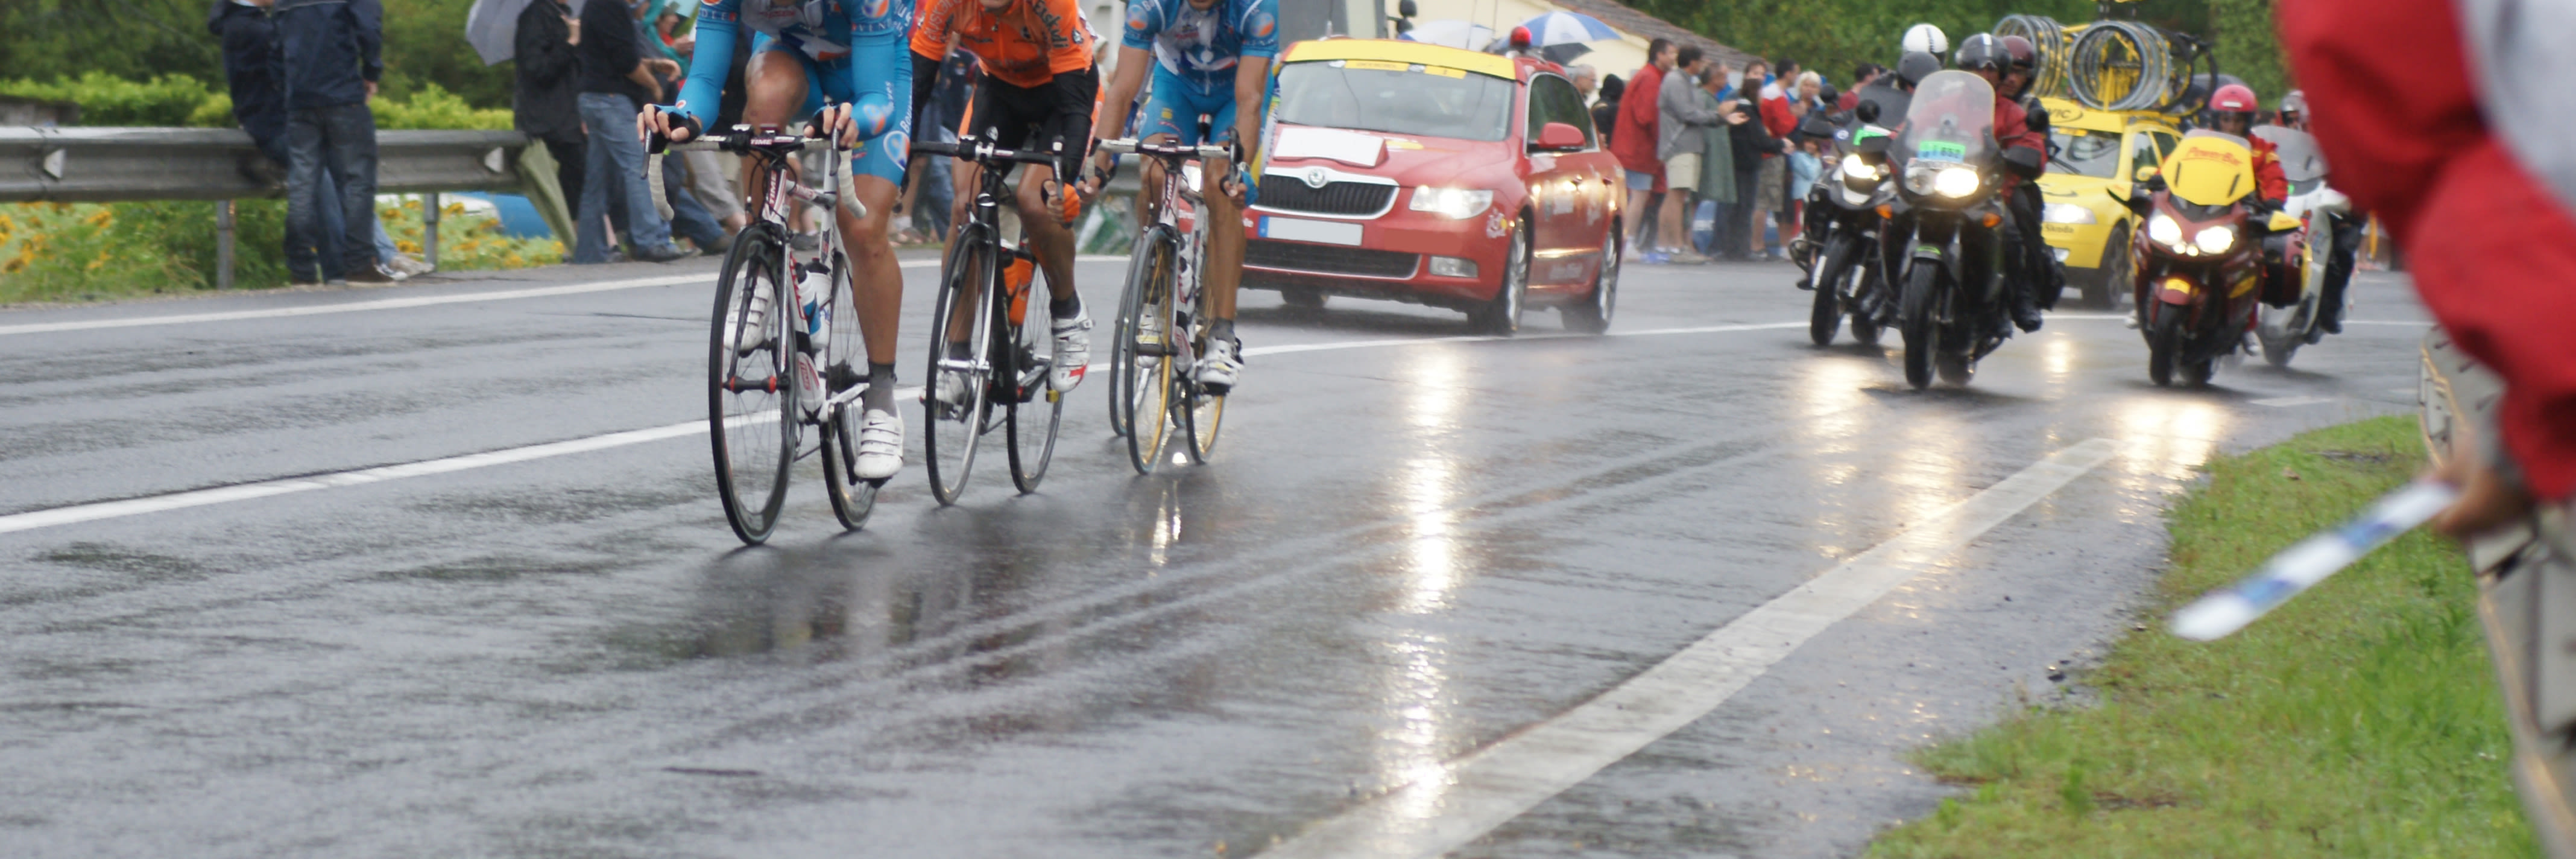 De regen maakt het gevaarlijk voor de kopgroep in een wielerwedstrijd. Foto: AdobeStock / Photo Passion